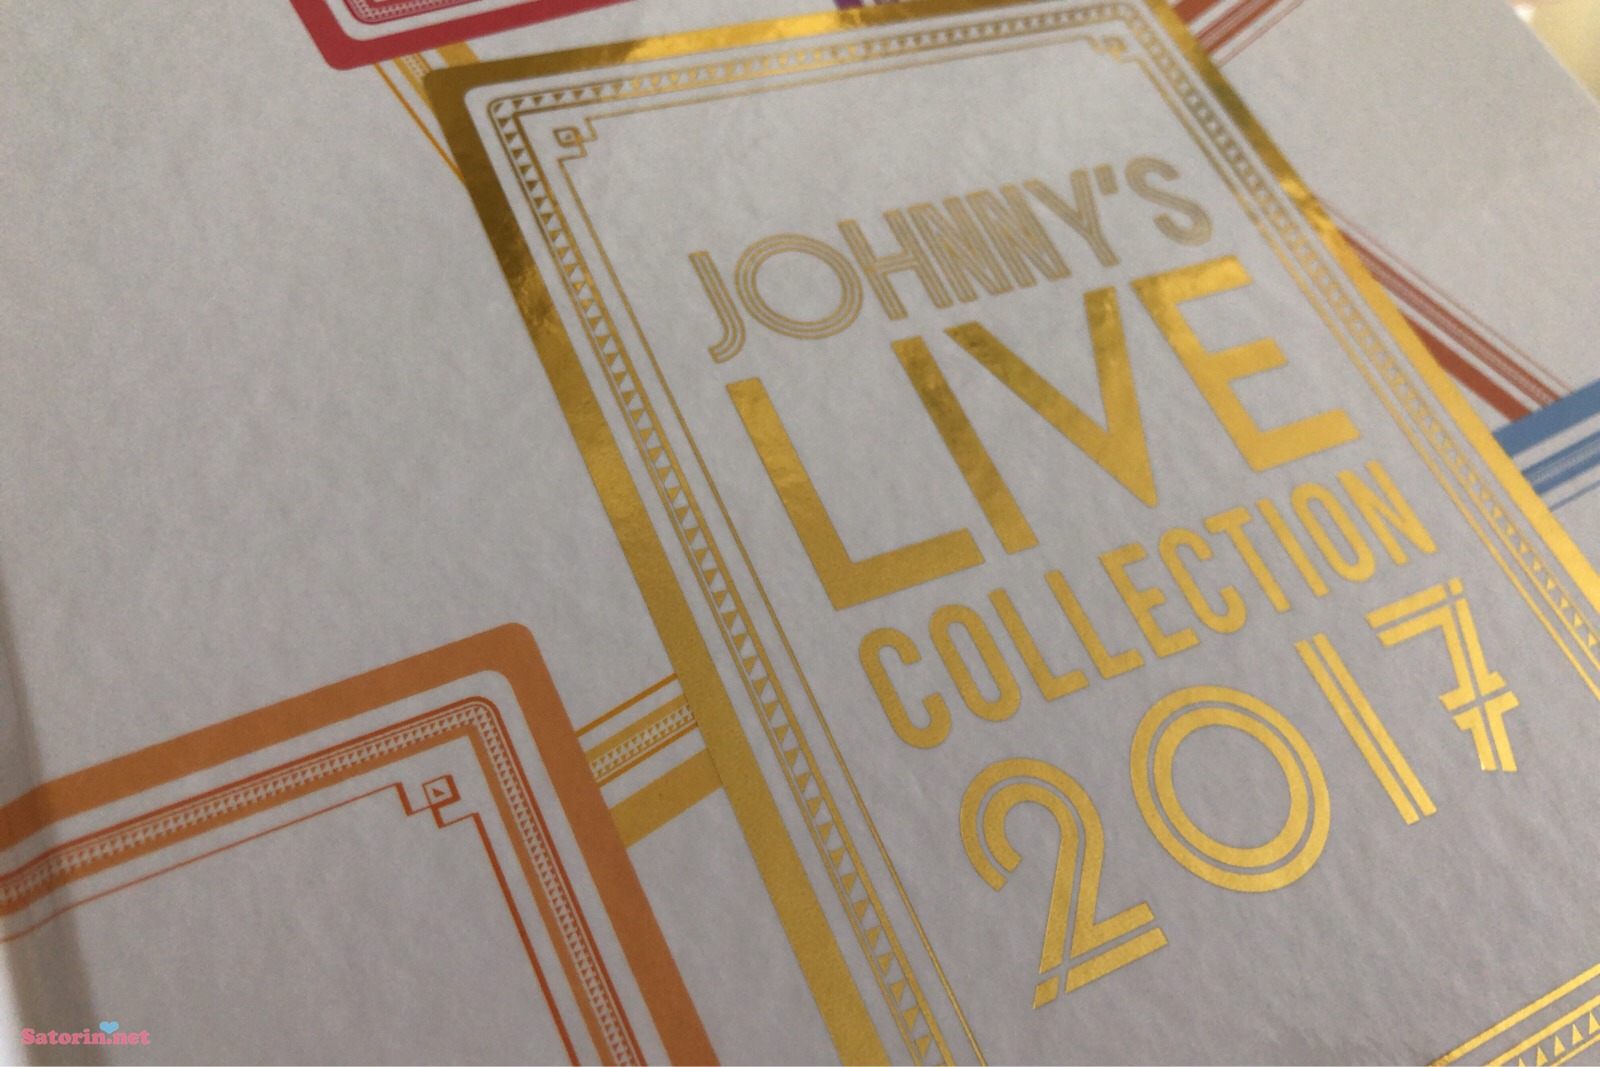 写真集『JOHNNY'S LIVE COLLECTION 2017』買っちゃった | Satorin.net